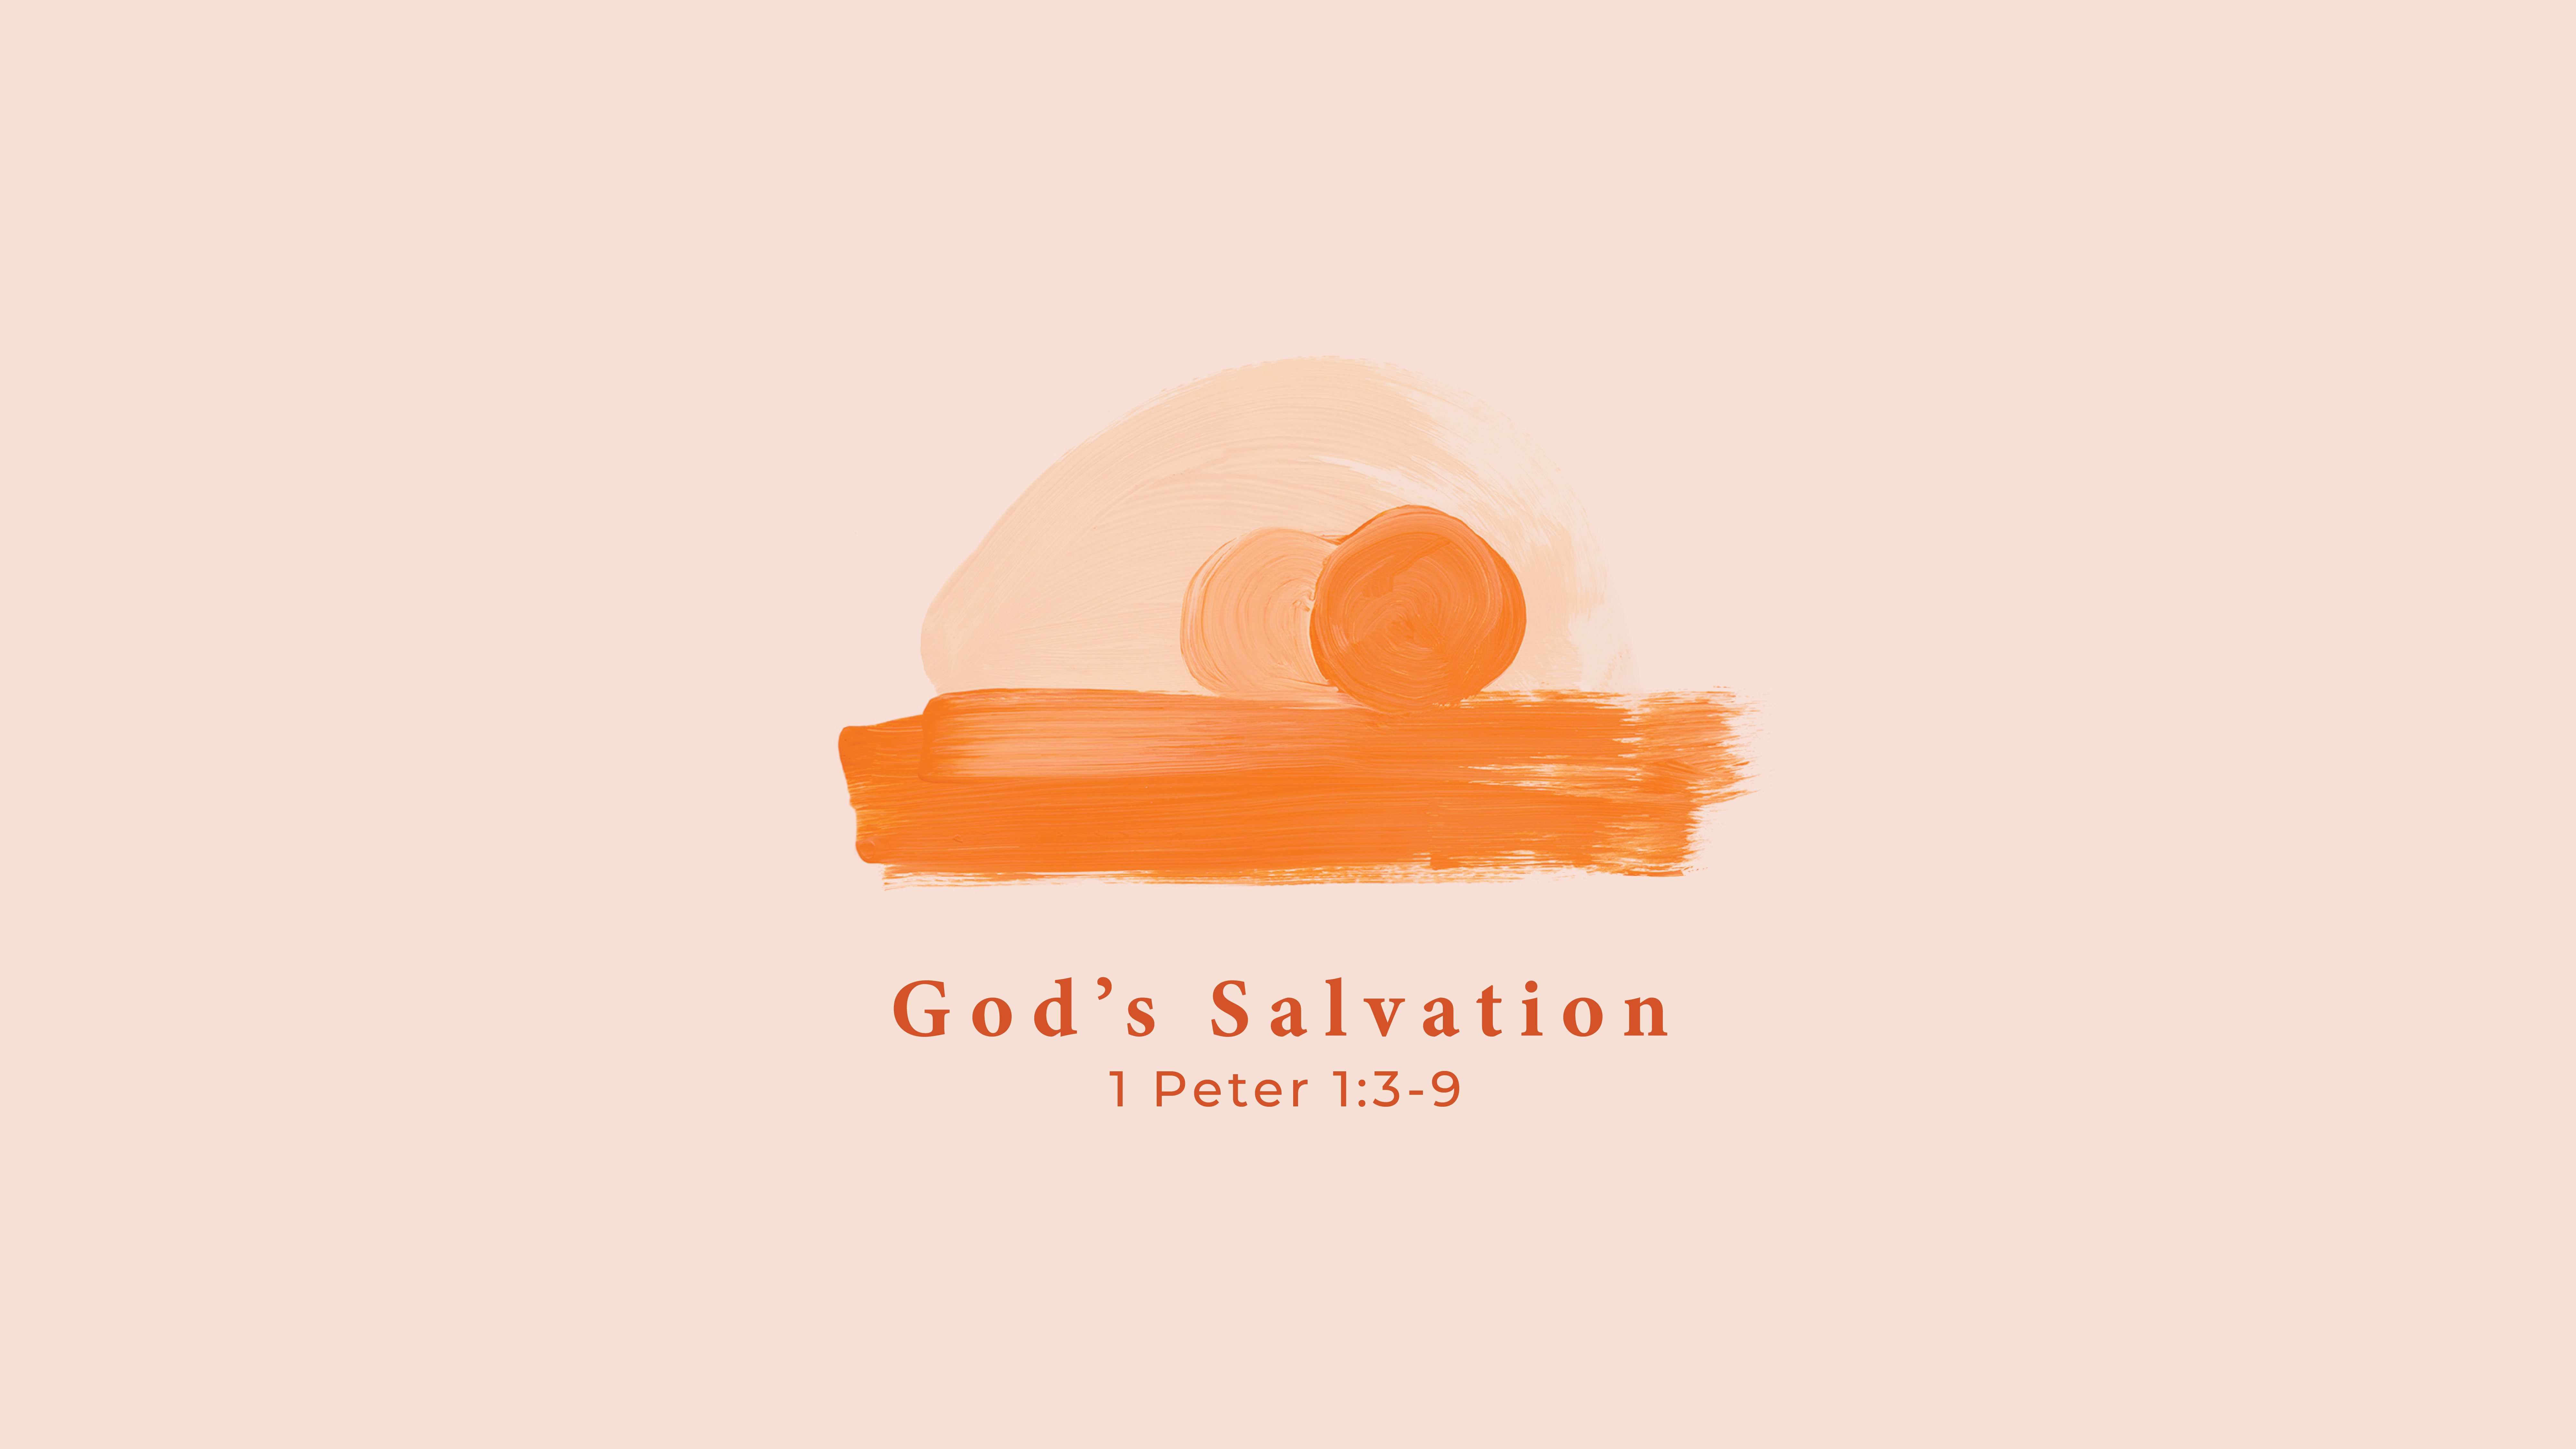 Easter Celebration: “God’s Salvation”